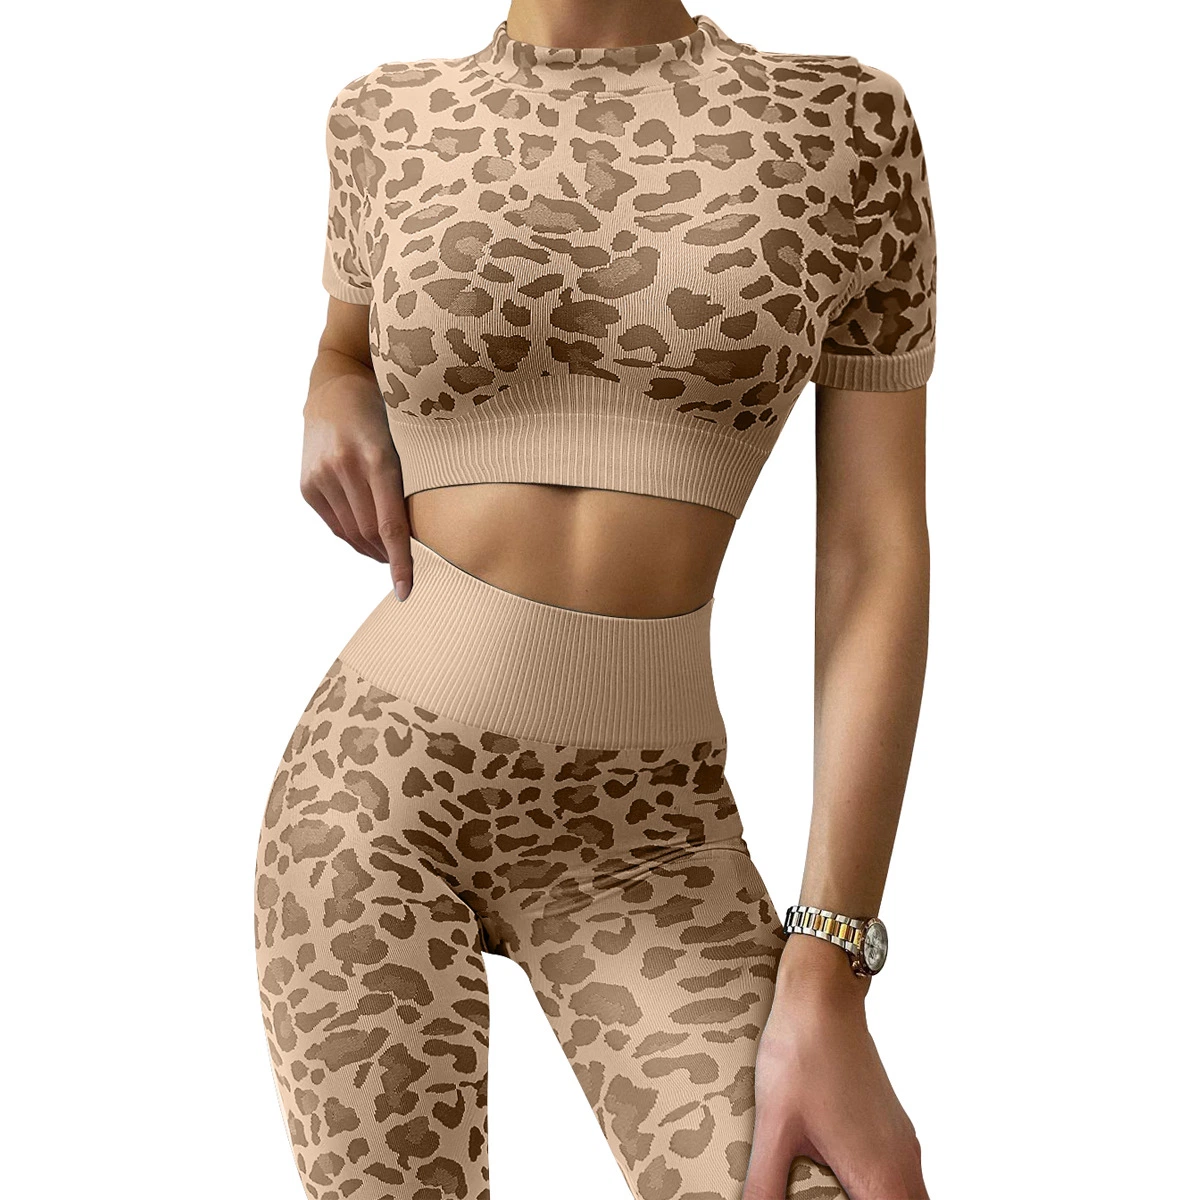 Großhandel/Lieferant Fabrik 2023 Neue Mode Leopard Print Fitness Kleidung Set Damenbekleidung Laufsport Tight Yoga Bekleidung Sport Yoga Bekleidung